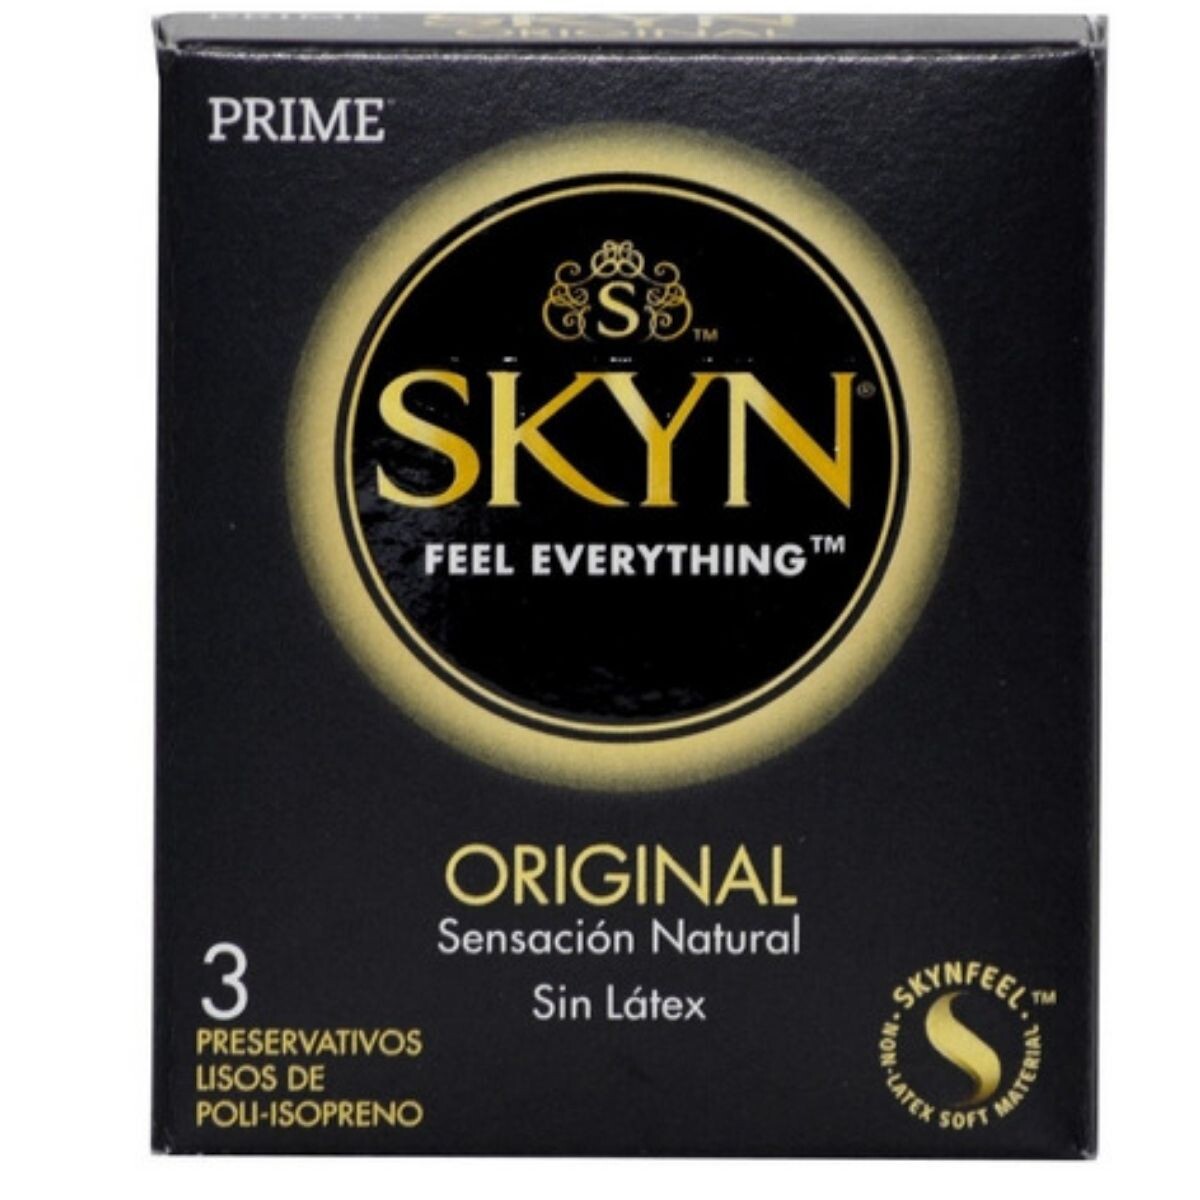 Preservativos Prime Skyn Original Sensación Natural X3 